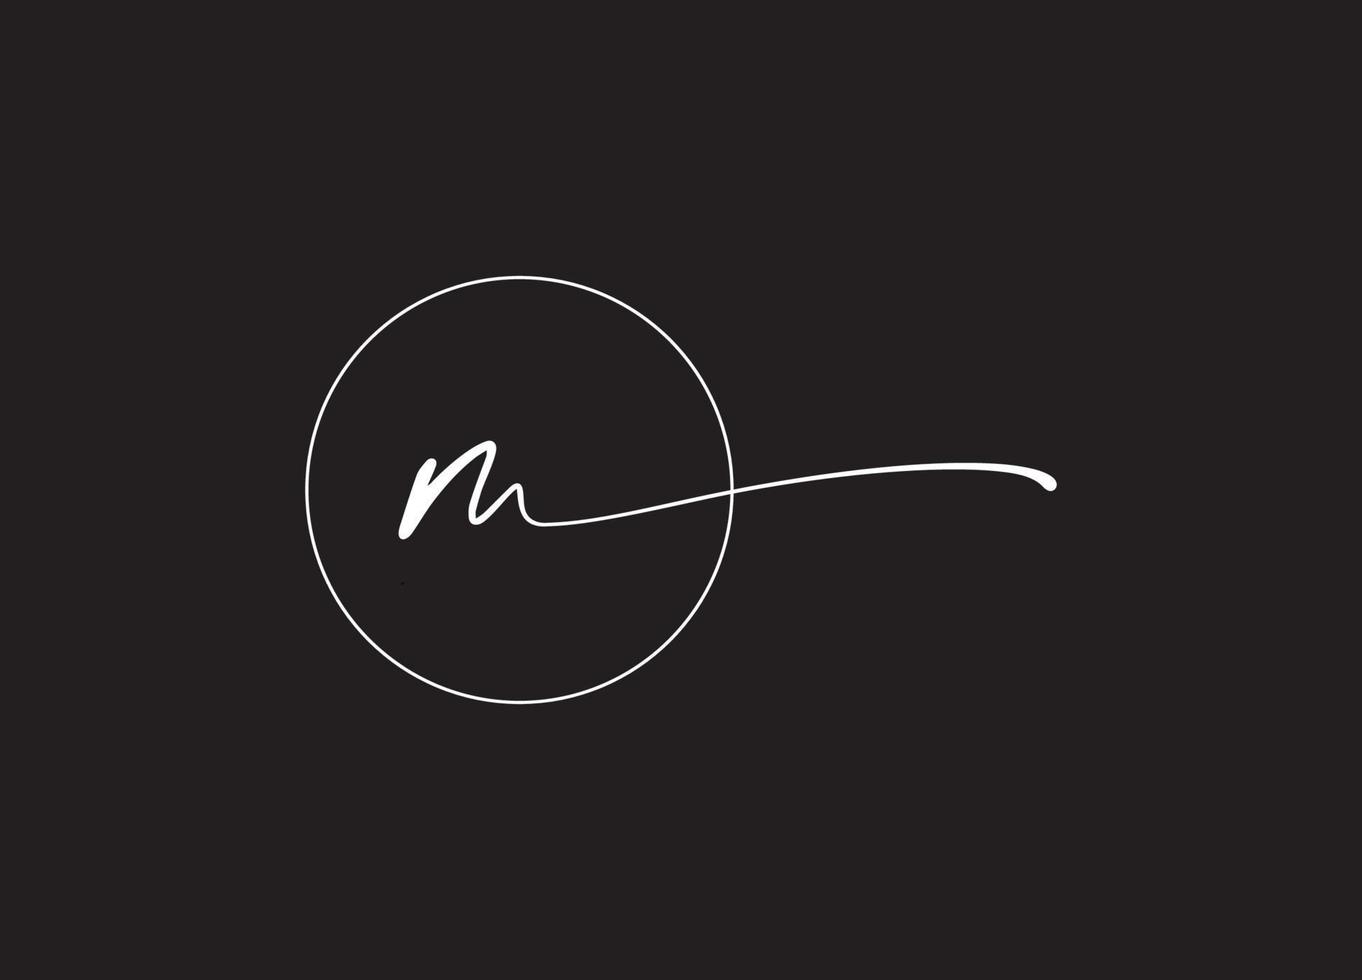 m logo design azienda logo vettore